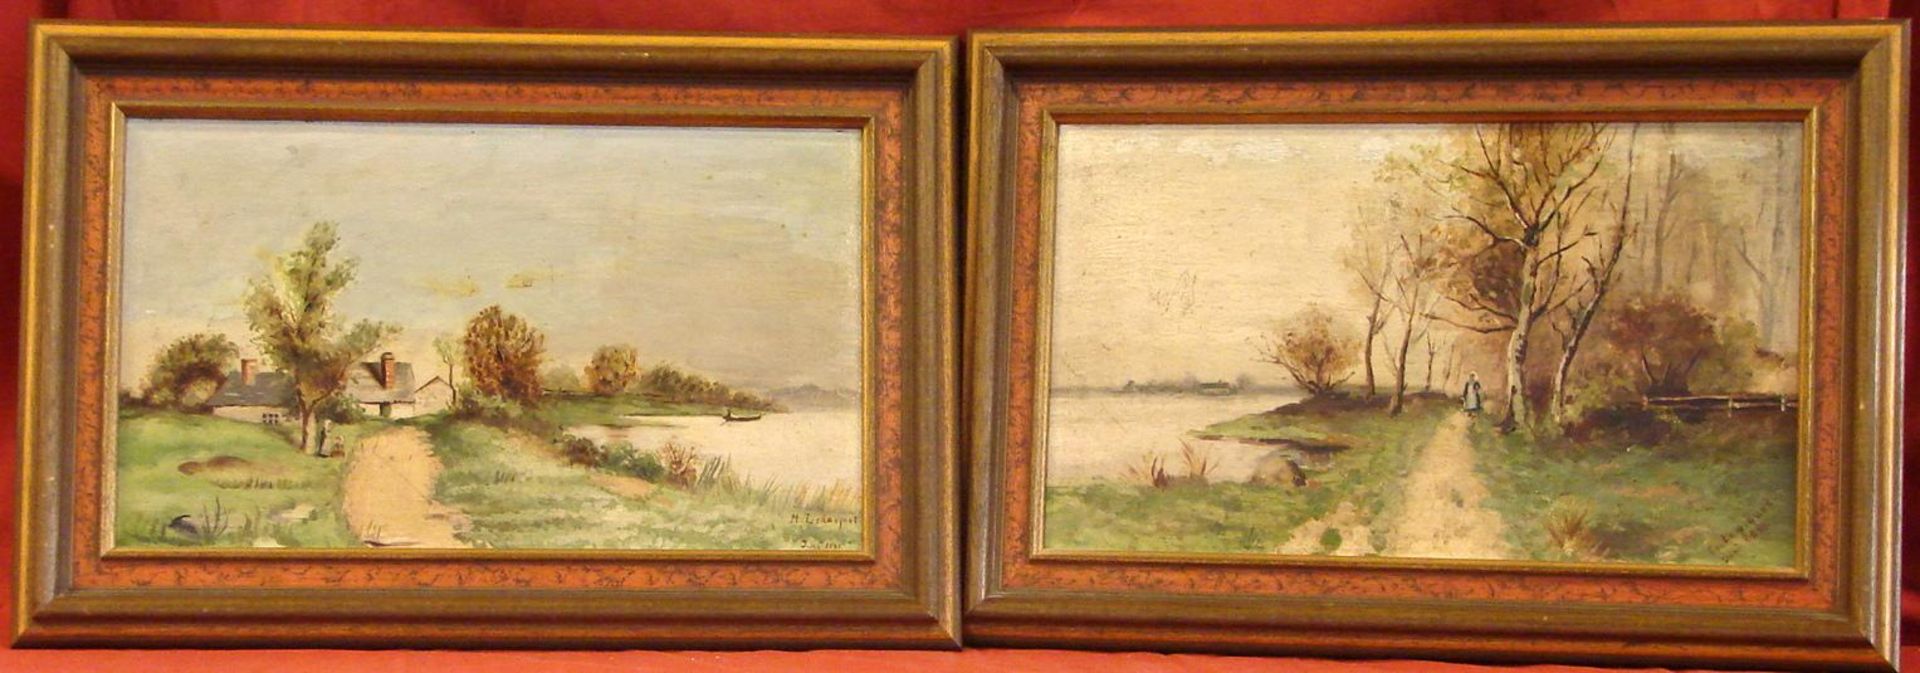 Paar Bilder, "Landschaften", Öl/Hartf., signiert M. LEDOSQUET, datiert 1898, ca. 21 x 36 cm